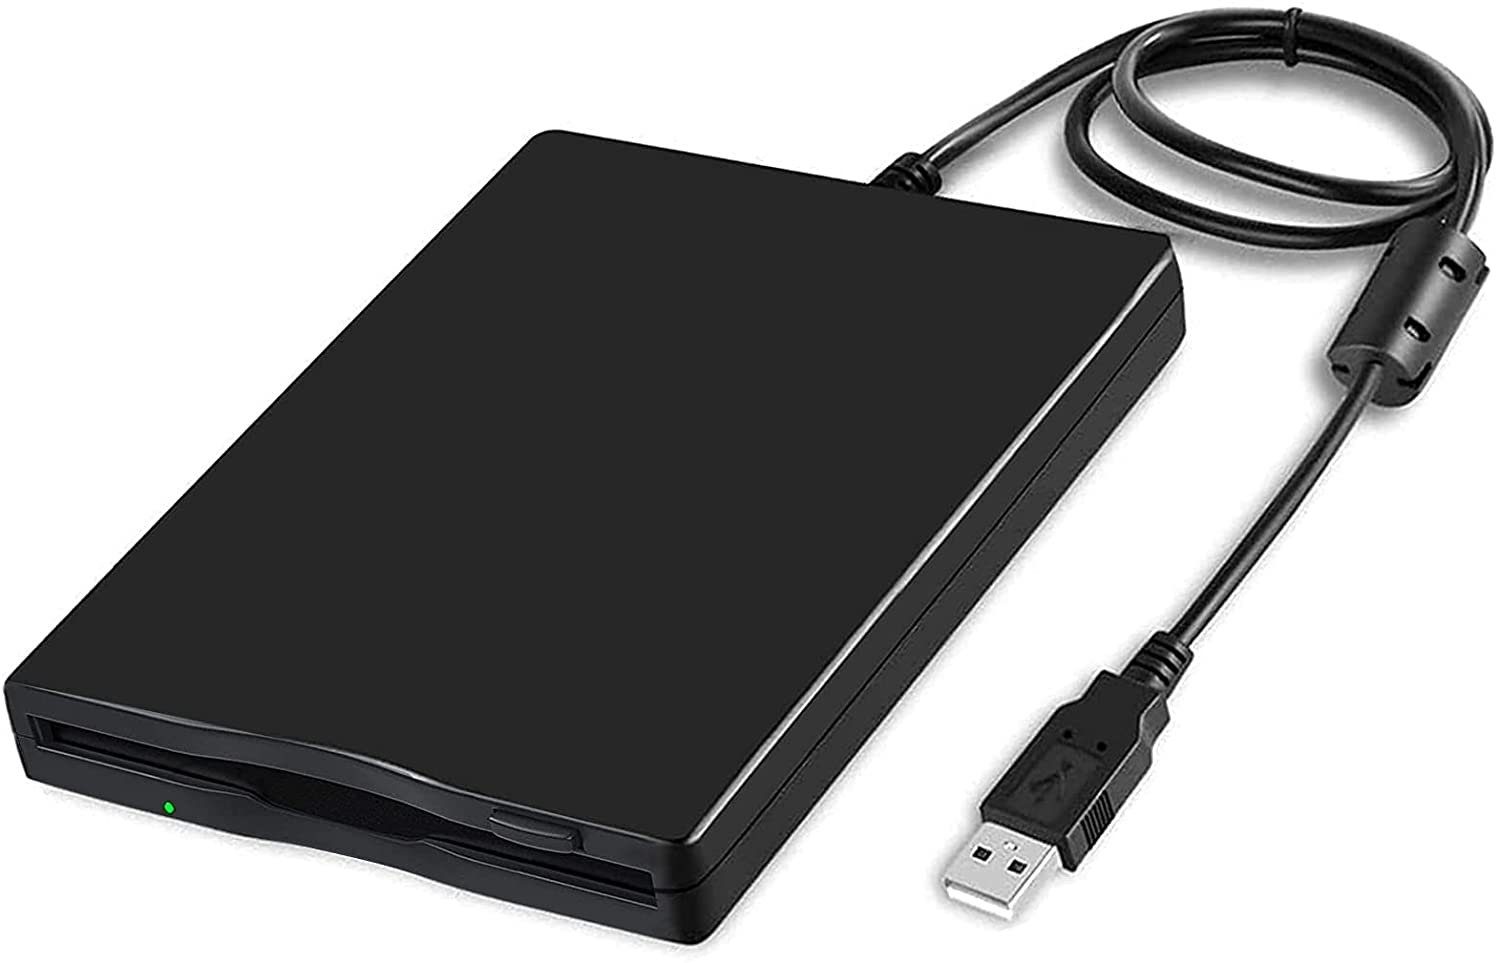 Daskoo 3.5'' Externes Diskettenlaufwerk USB Diskettenlaufwerk (1,44MB FDD, Floppy Disketten-Laufwerk)